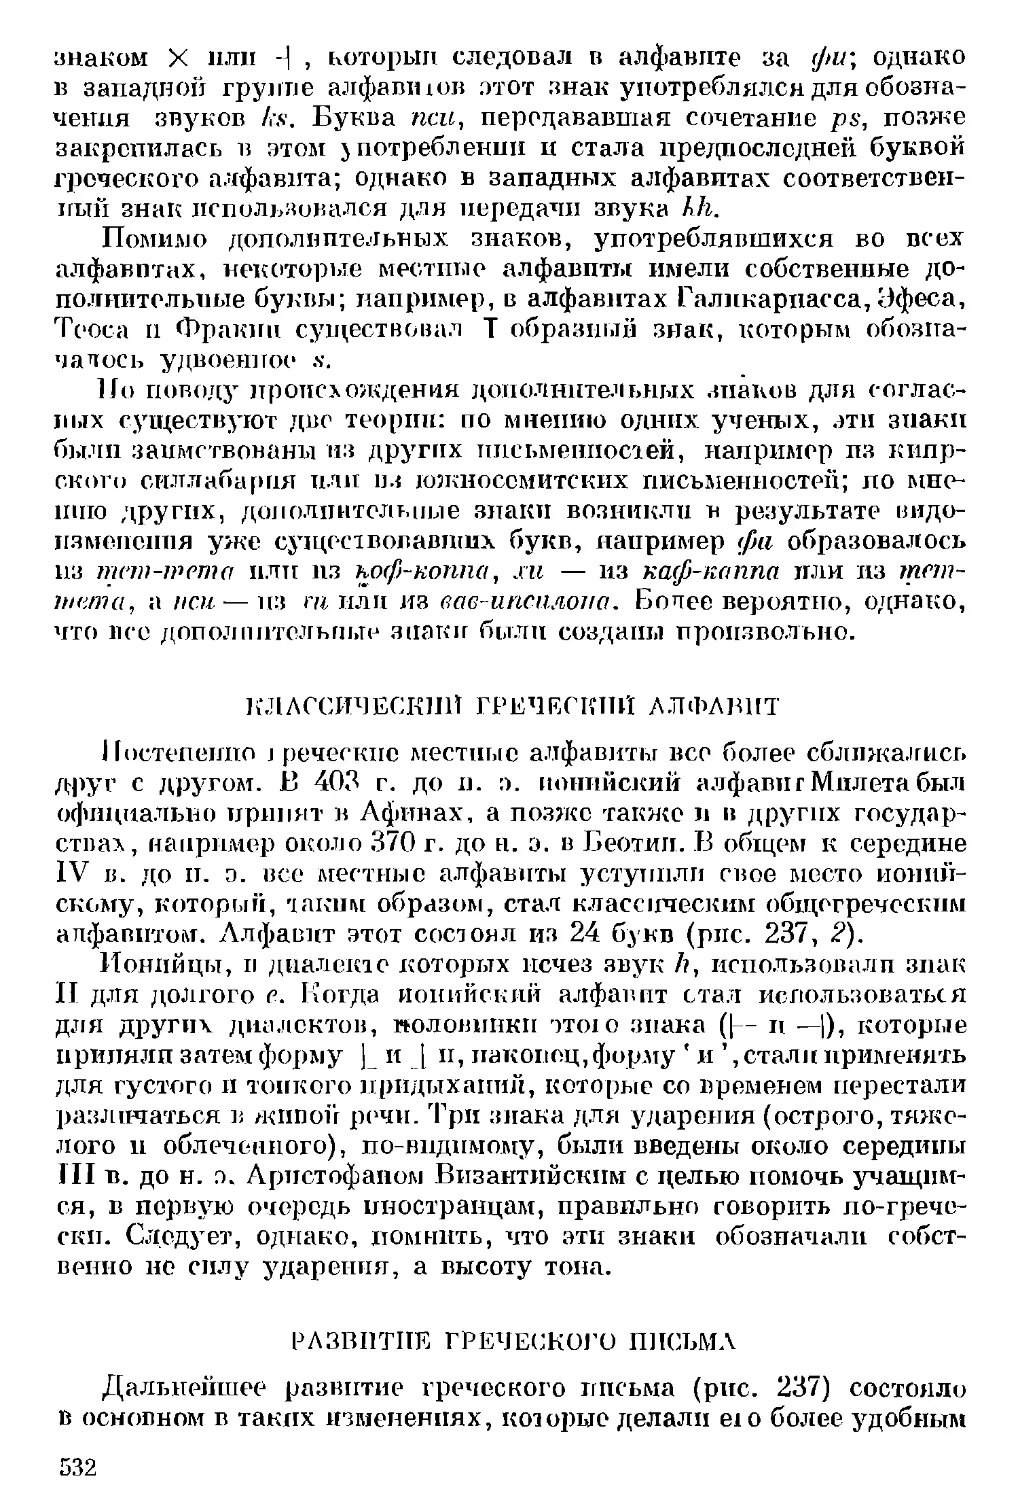 Классический греческий алфавит
Развитие греческого письма